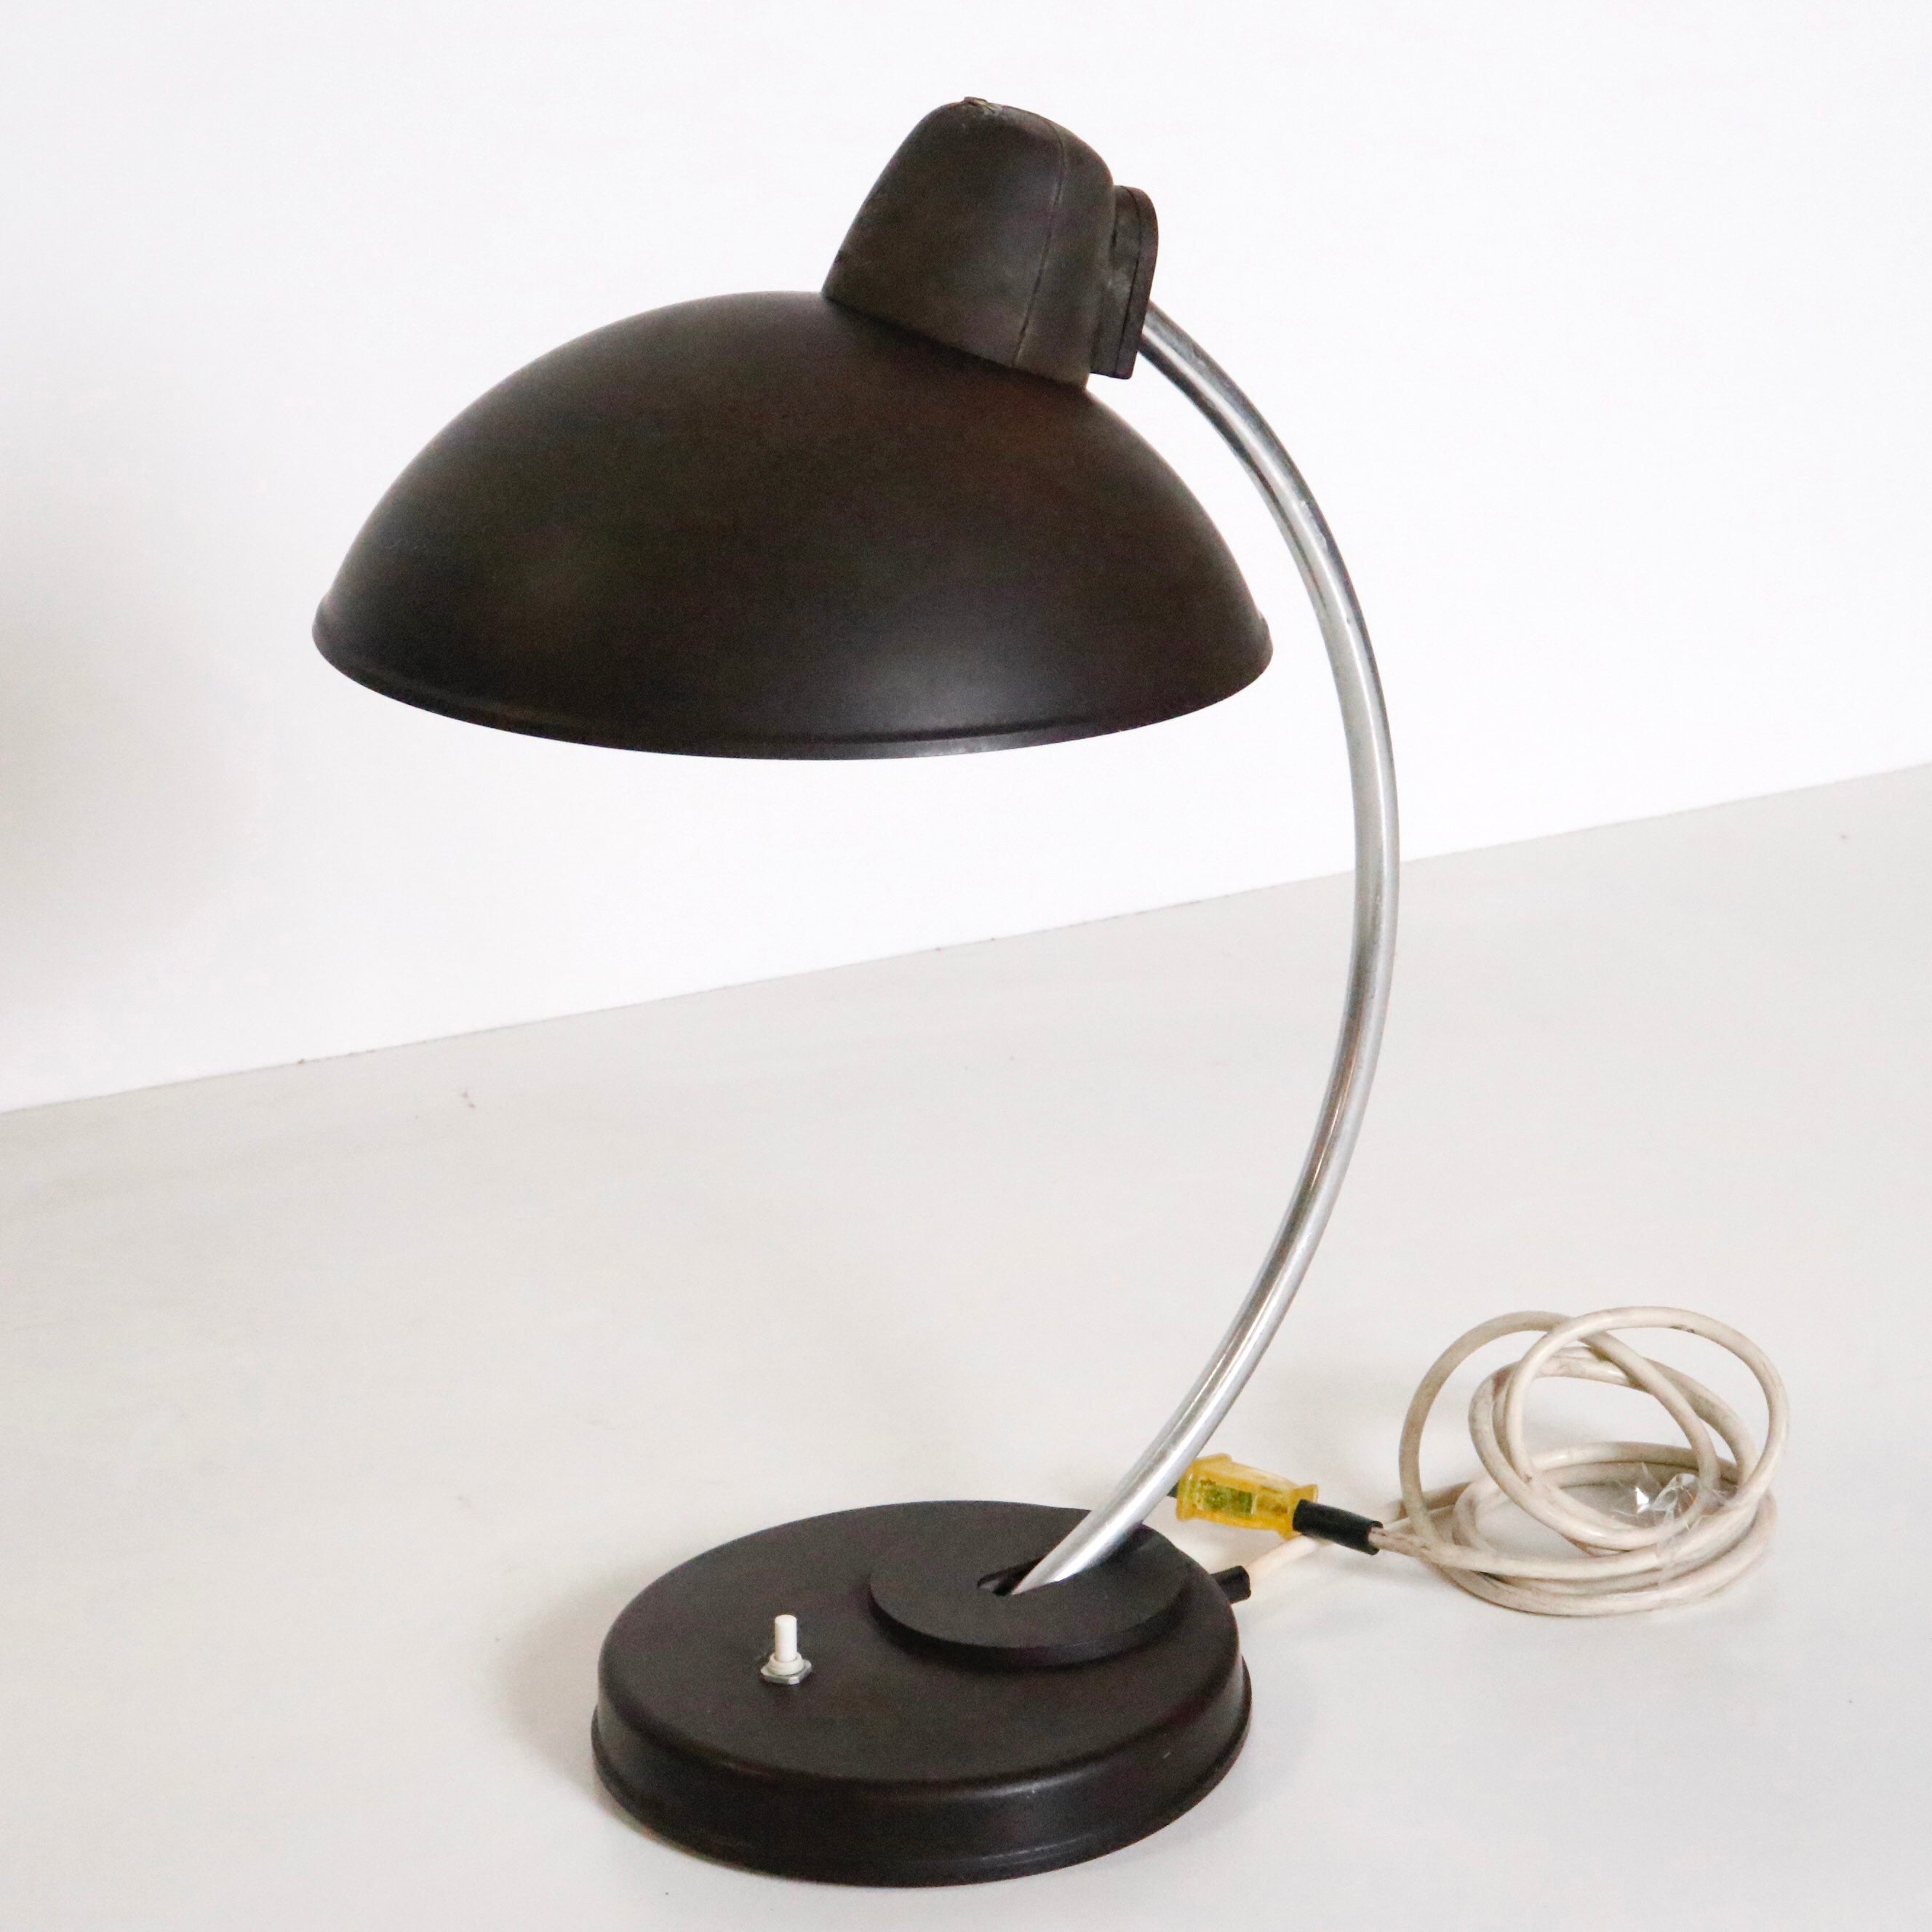 Eine originelle braune Schreibtischlampe, entworfen von Marianne Brandt und Hin Bredendieck für LBL, eine deutsche Lampenfirma, die für ihre Bauhaus-Leuchten bekannt ist. 

Modell 0342.

Deutschland, ca. 1930-1940. 

Signiert auf dem Farbton.

Ein